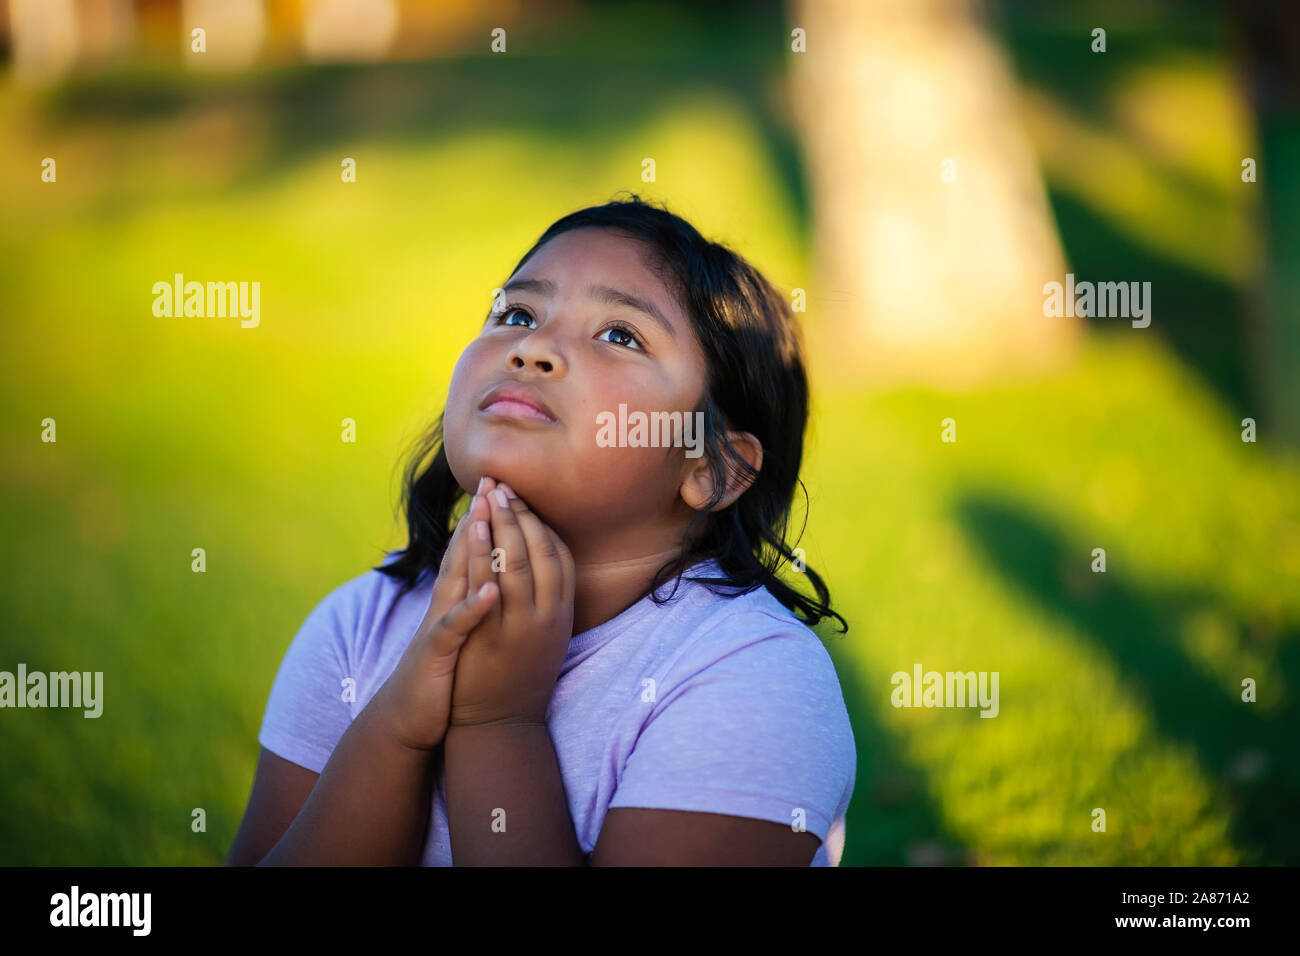 Una niña latina con fuerte convicción hacia Dios, se arrodilla a rezar en la súplica a Dios el Altísimo. Foto de stock